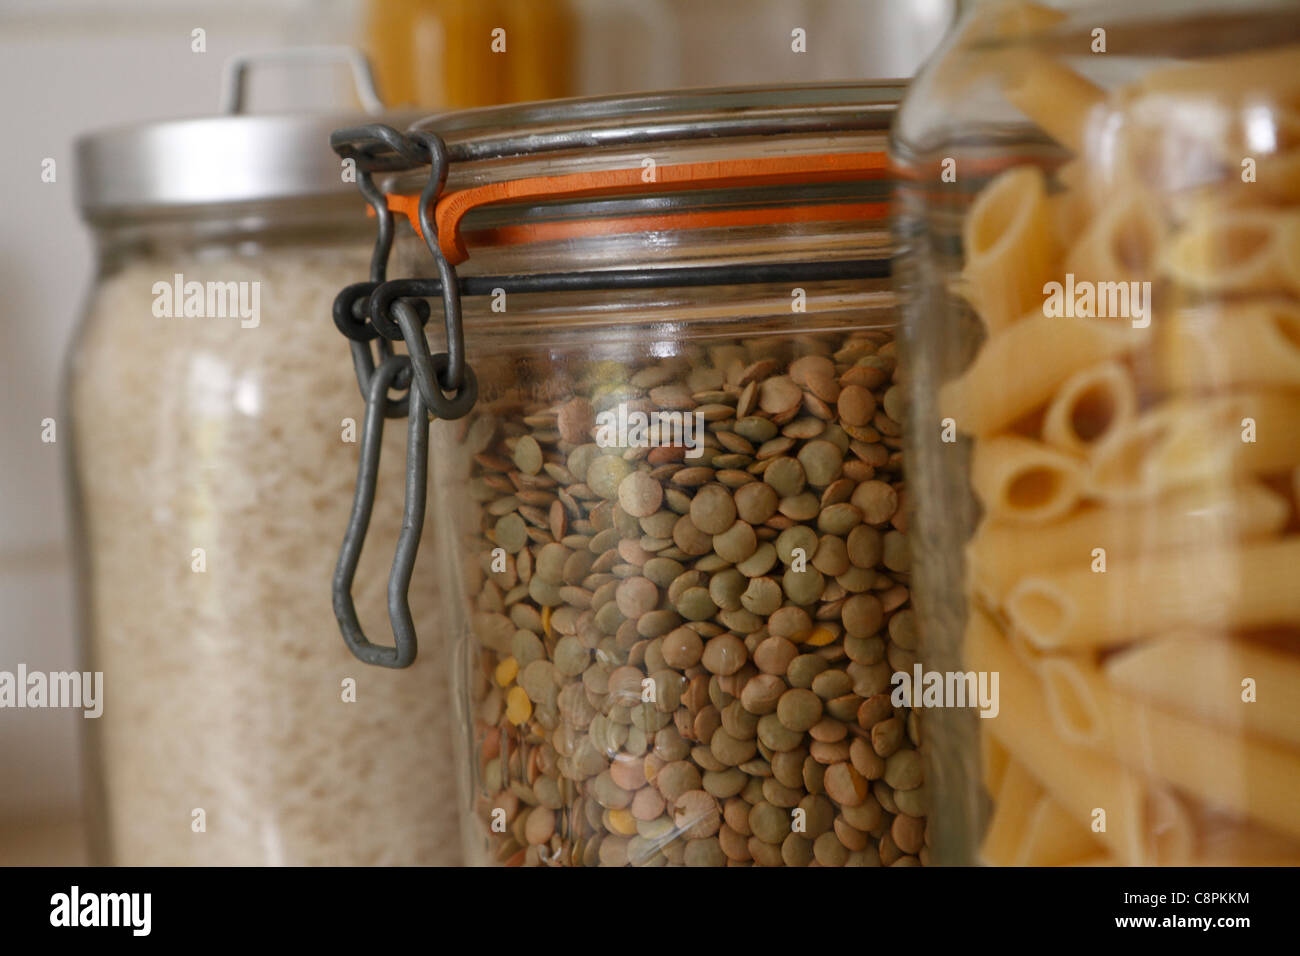 Green lentils in glass kitchen storage jar Stock Photo